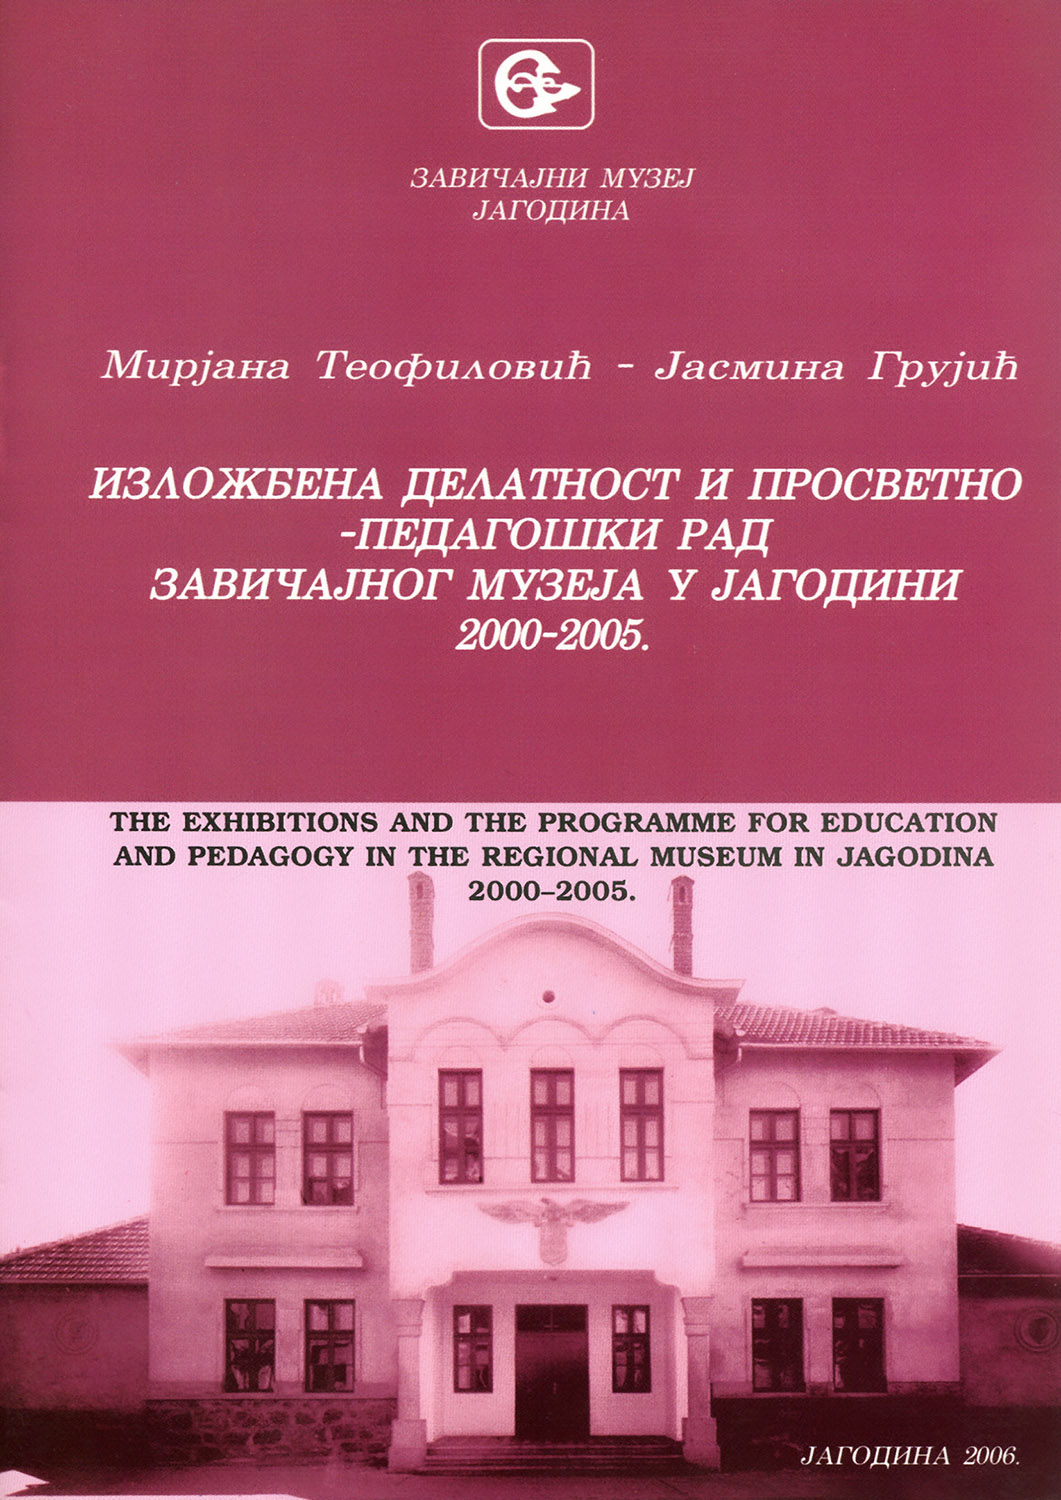 Изложбена делатност и просветно-педагошки рад Завичајног музеја у Јагодини 2000-2005